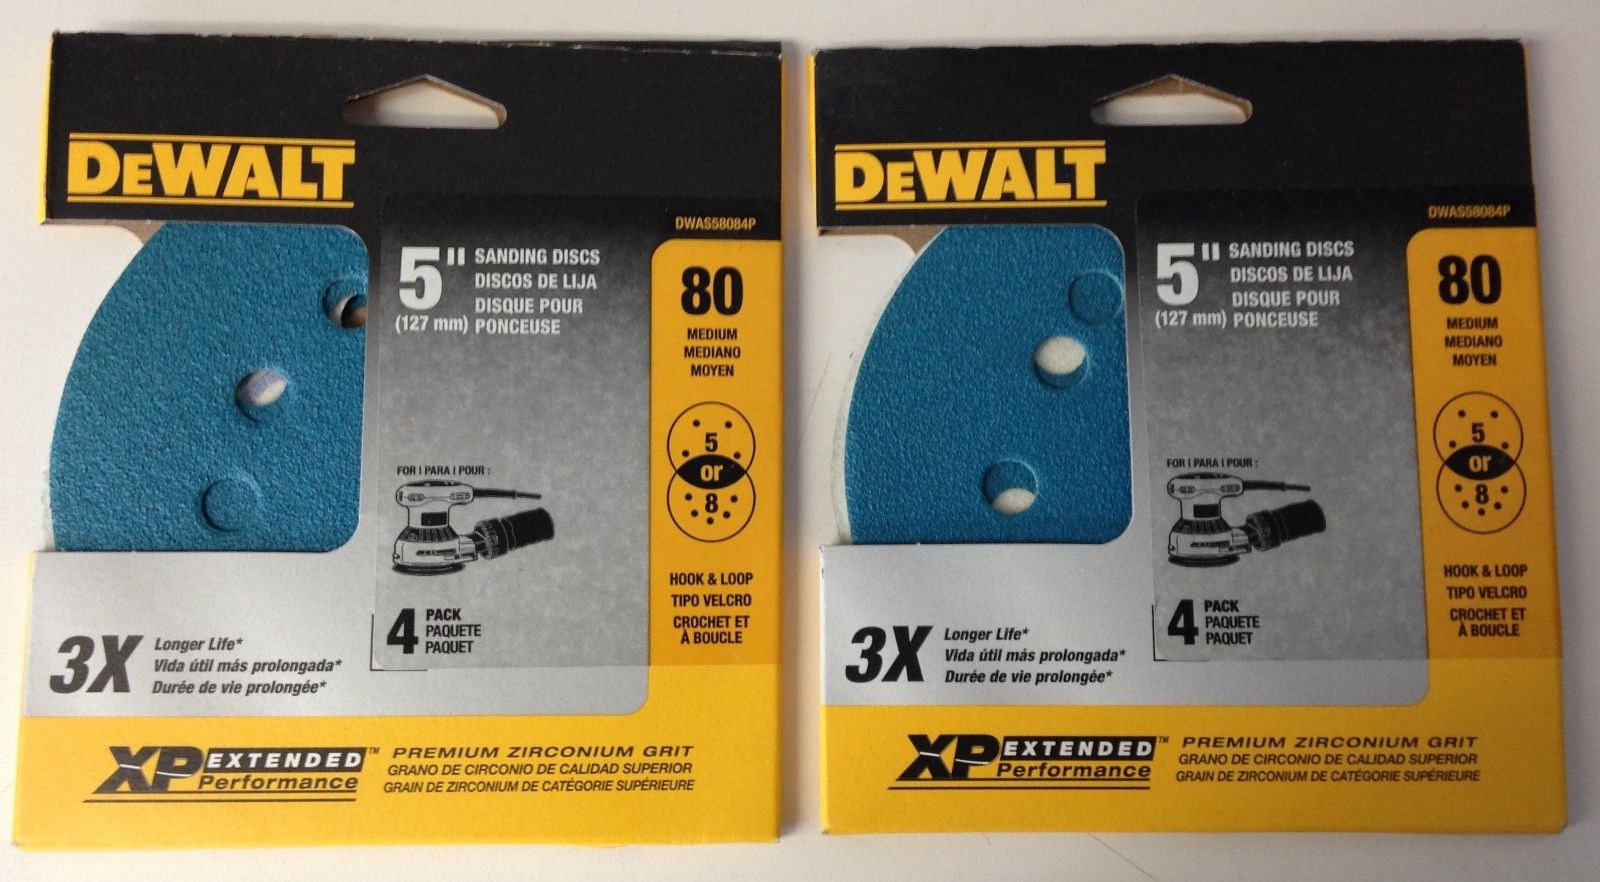 Dewalt DWAS58084P 5" 80 Grit 5 or 8 Hole Hook & Loop Sanding Discs 2 Packs of 4